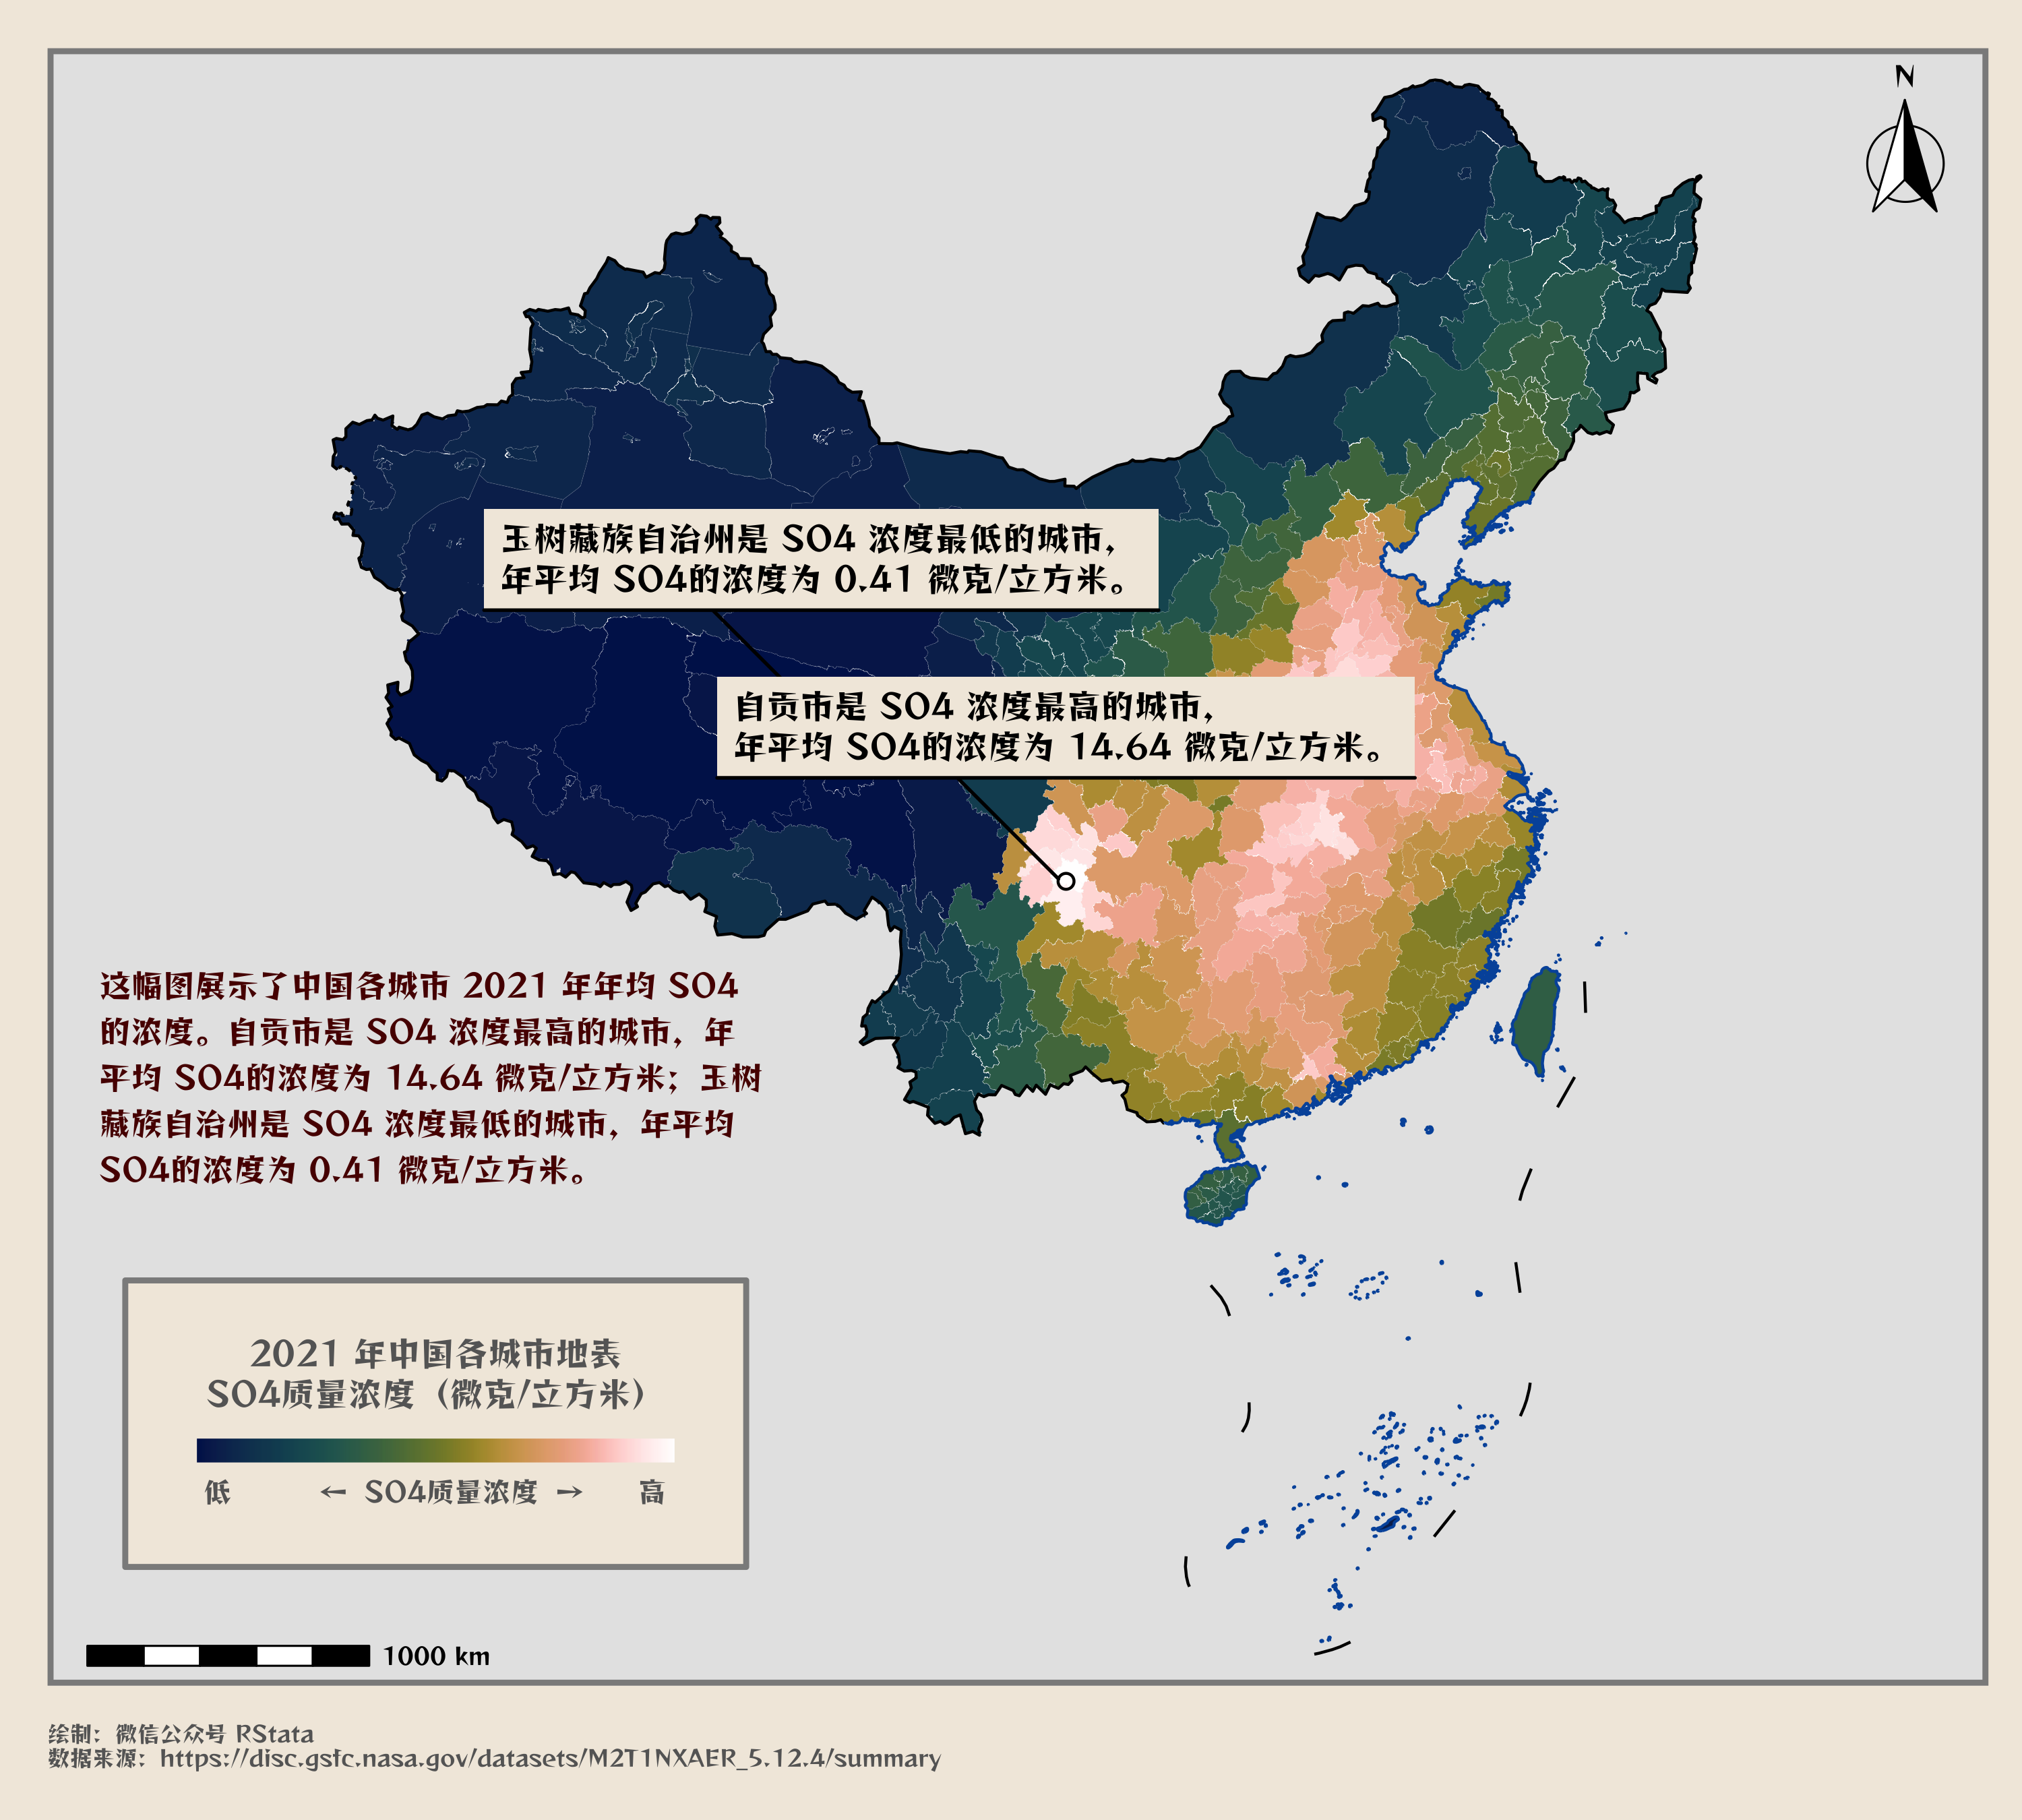 2021 年中国各市的年均 SO4 浓度分布